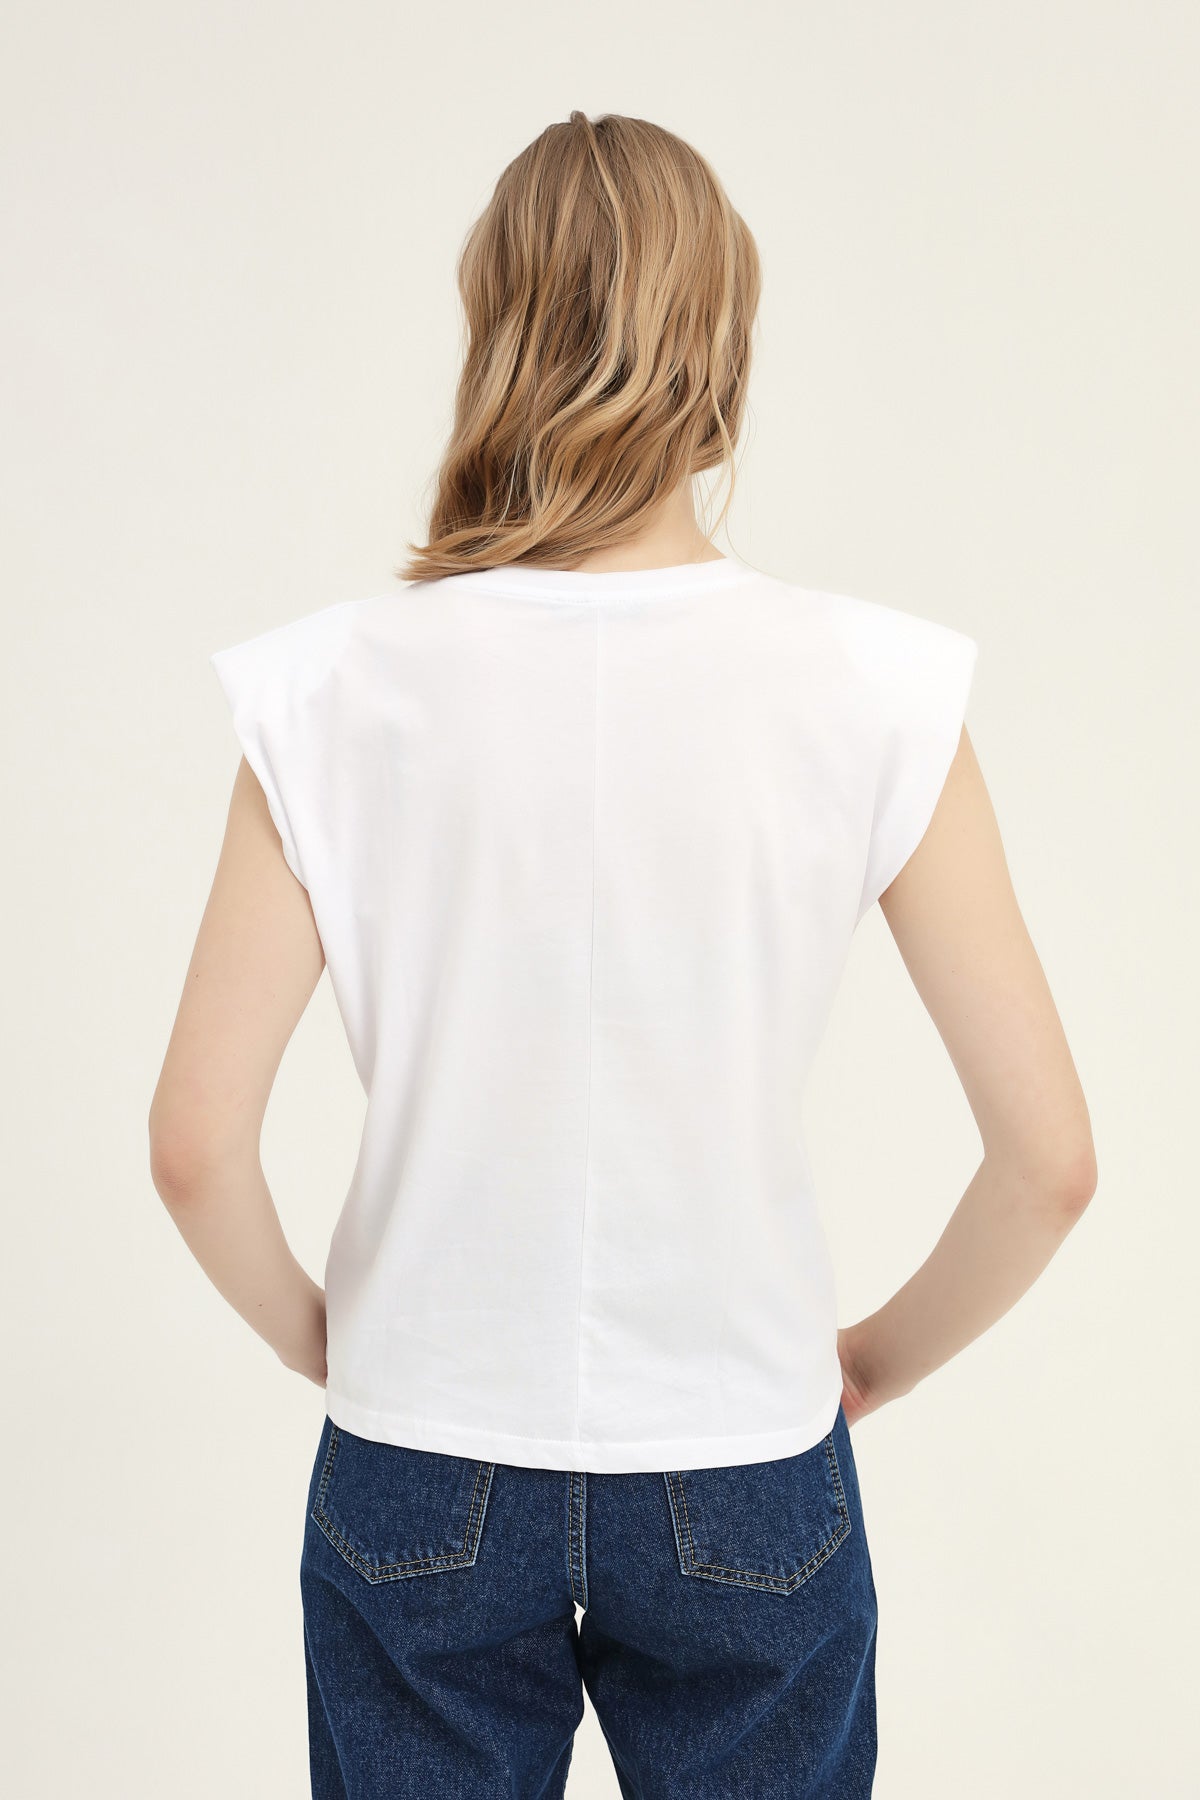 Padded Sleeveless Basic T-Shirt White